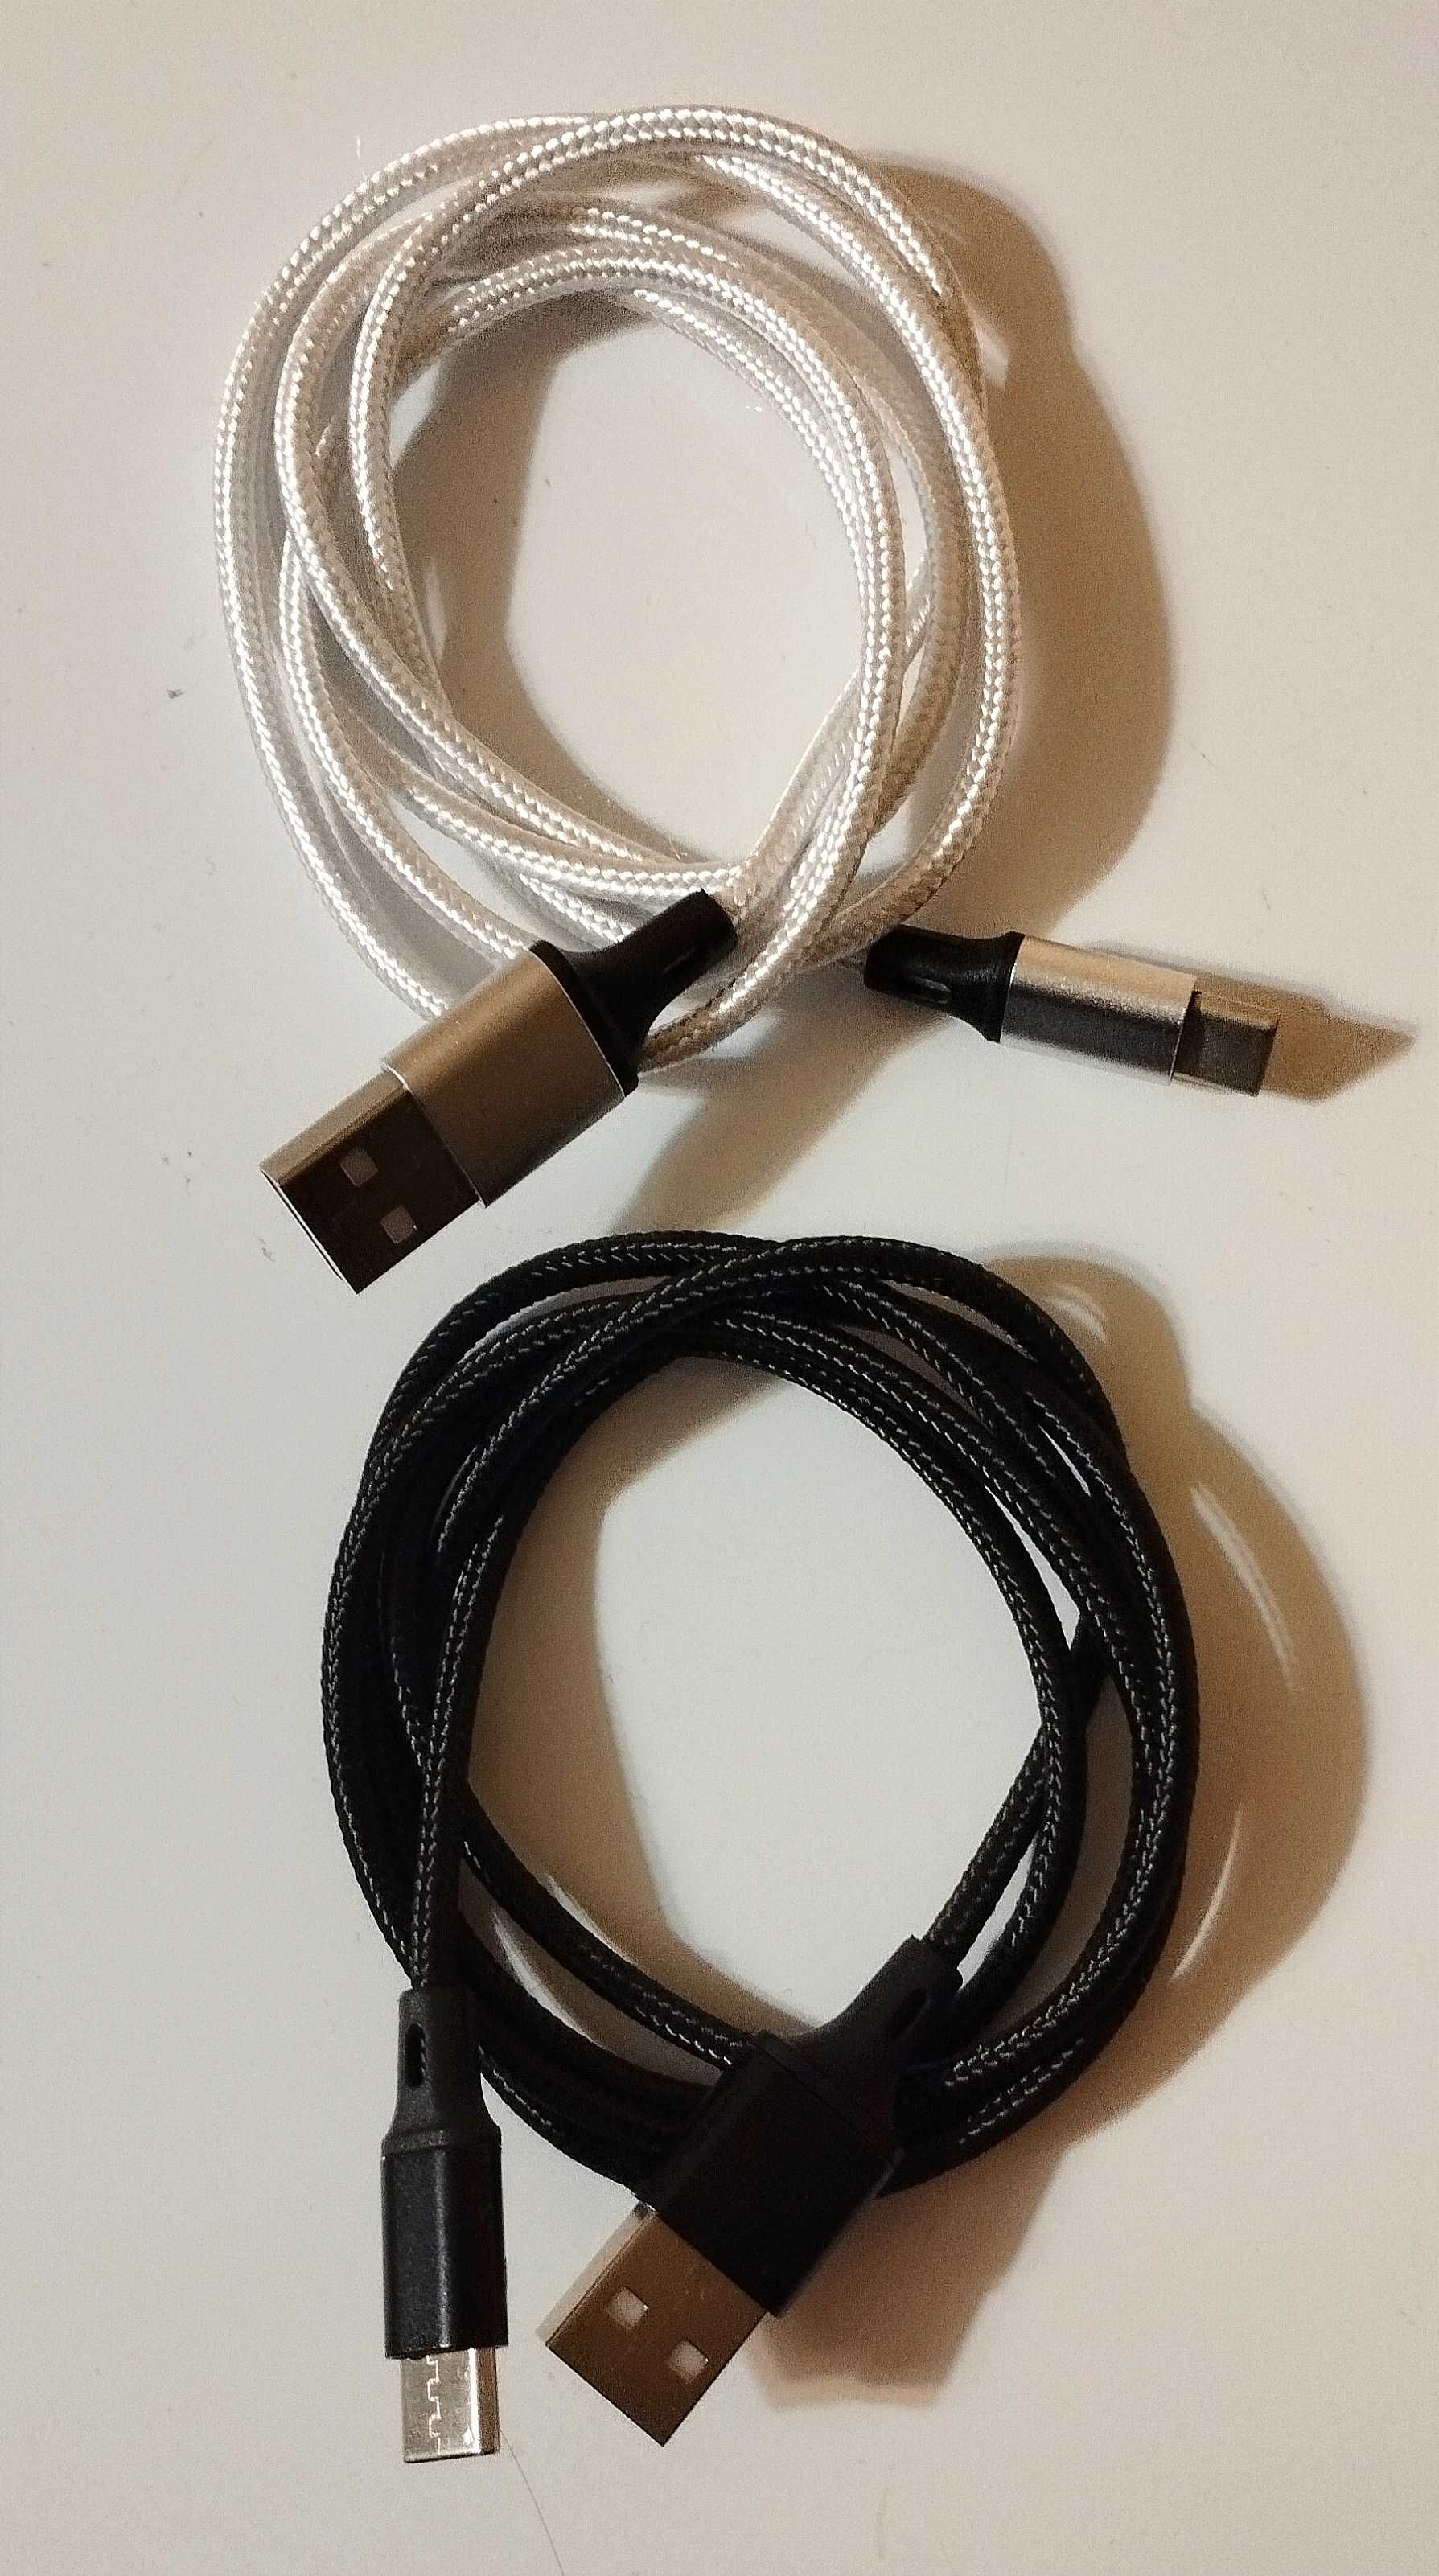 Зарядный кабель USB - Type C 2 шт быстрая зарядка 20W / 3 A